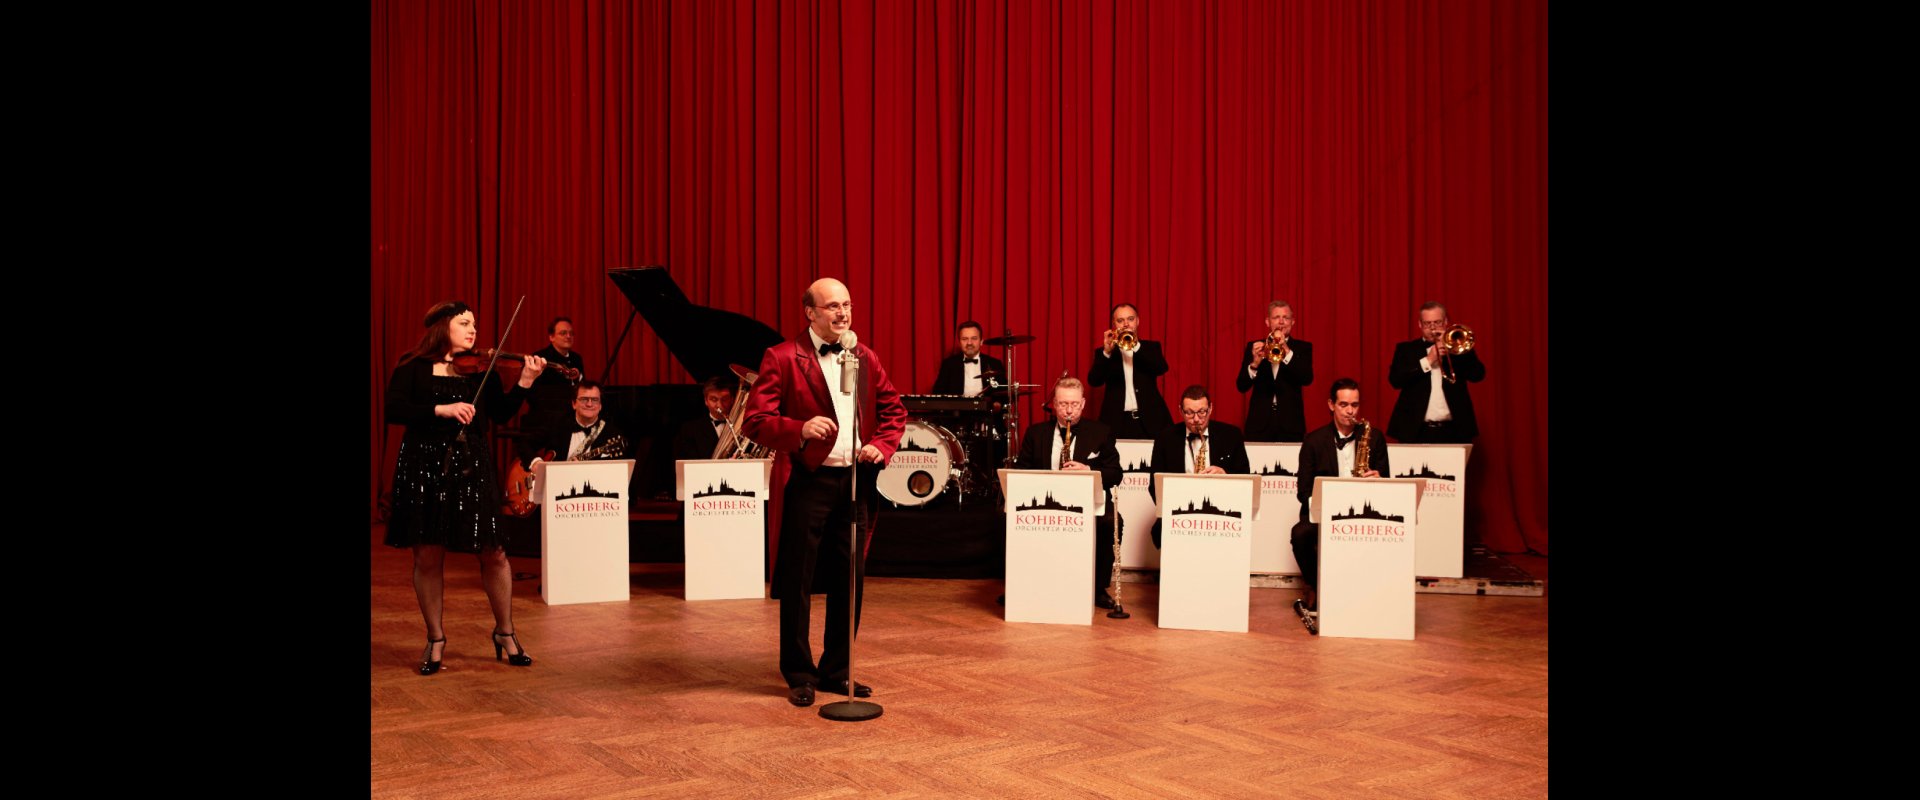 Das Kohberg Orchester 2